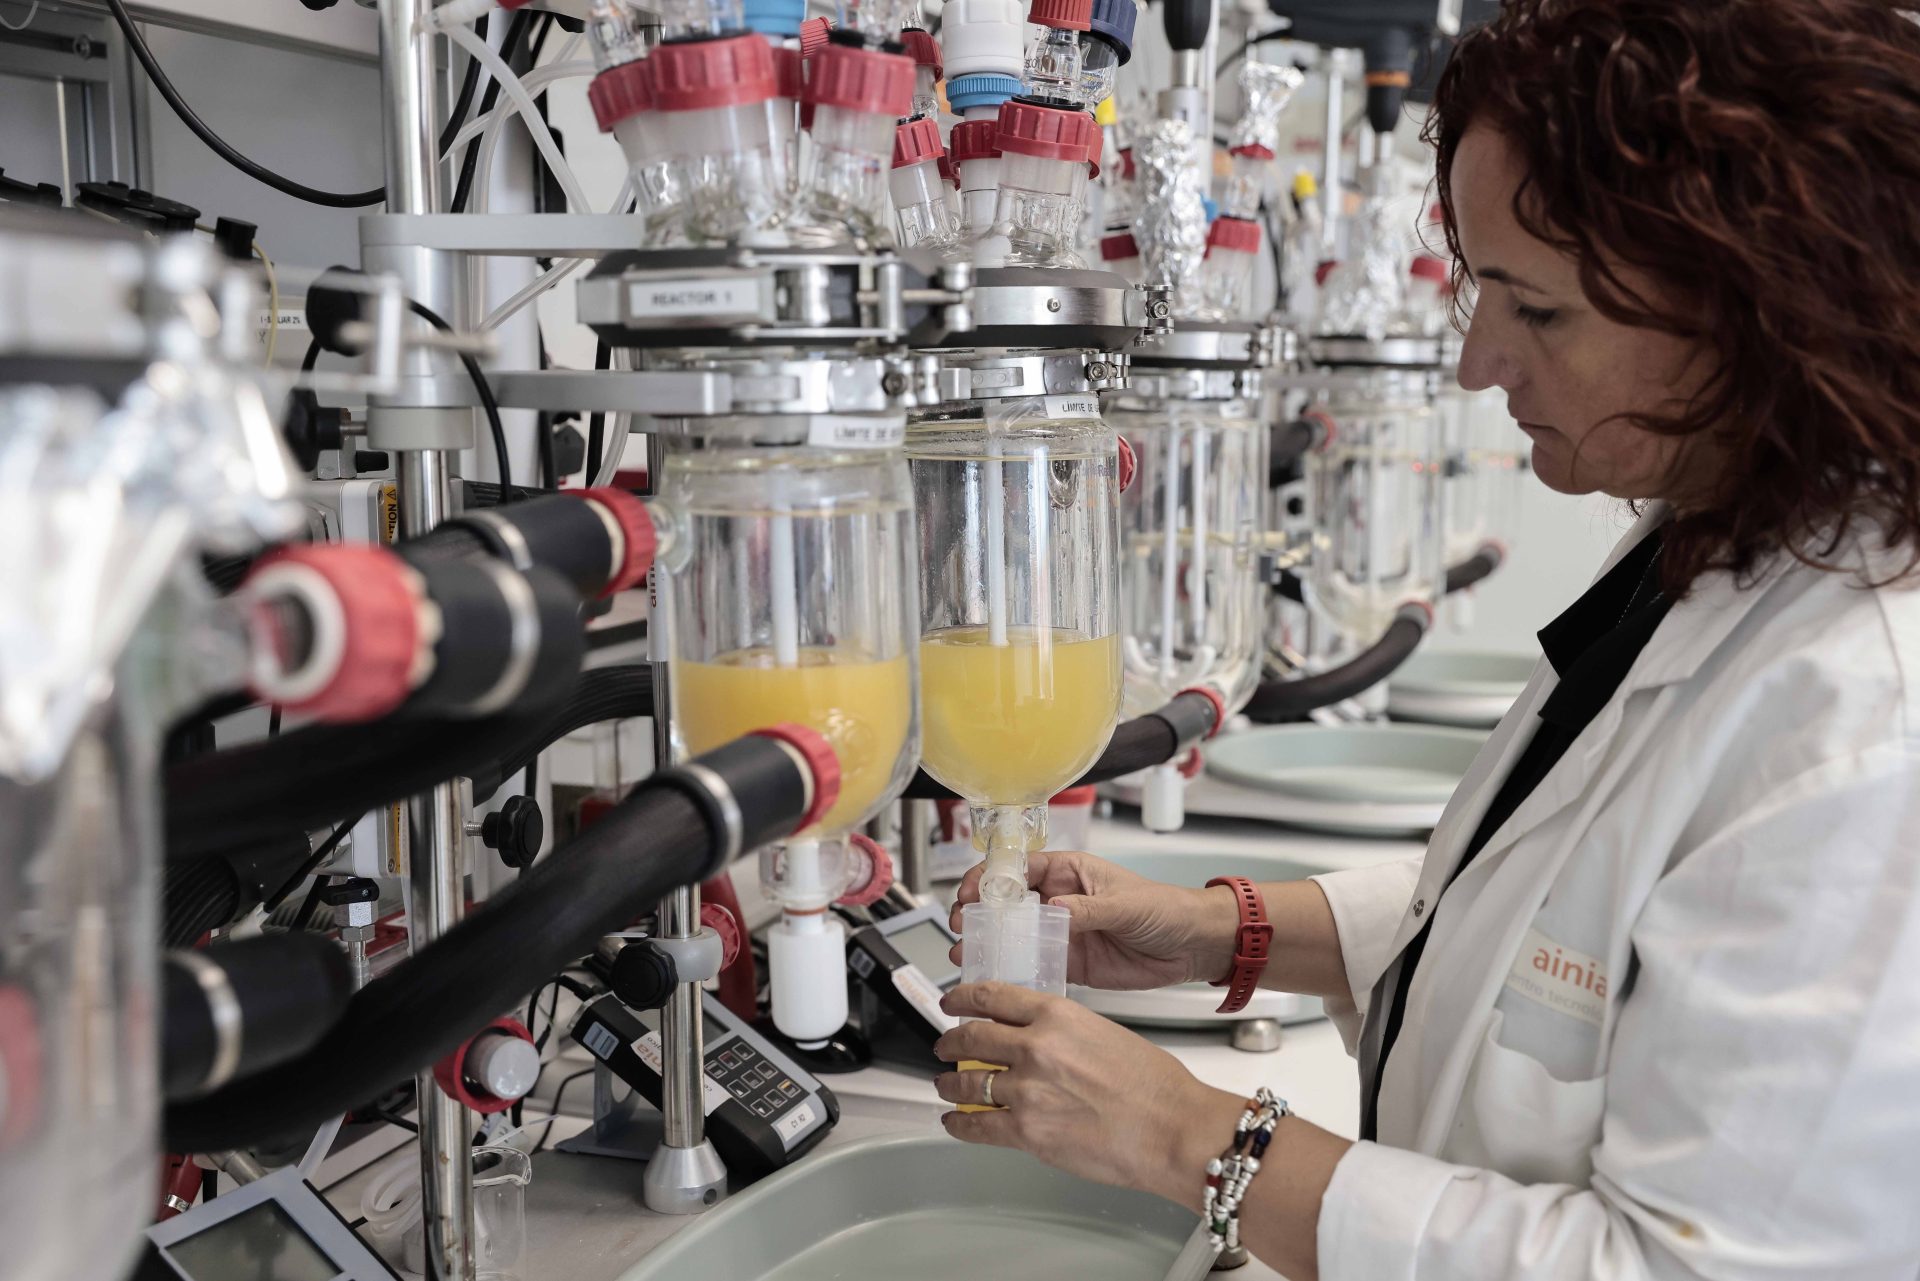 La responsable de estudios de digestión in vitro de Ainia, Blanca Viadel, que detalla que el equipo, instalado en la planta de Ainia en Paterna (València) “reproduce la digestión bucal, gástrica e intestinal”.